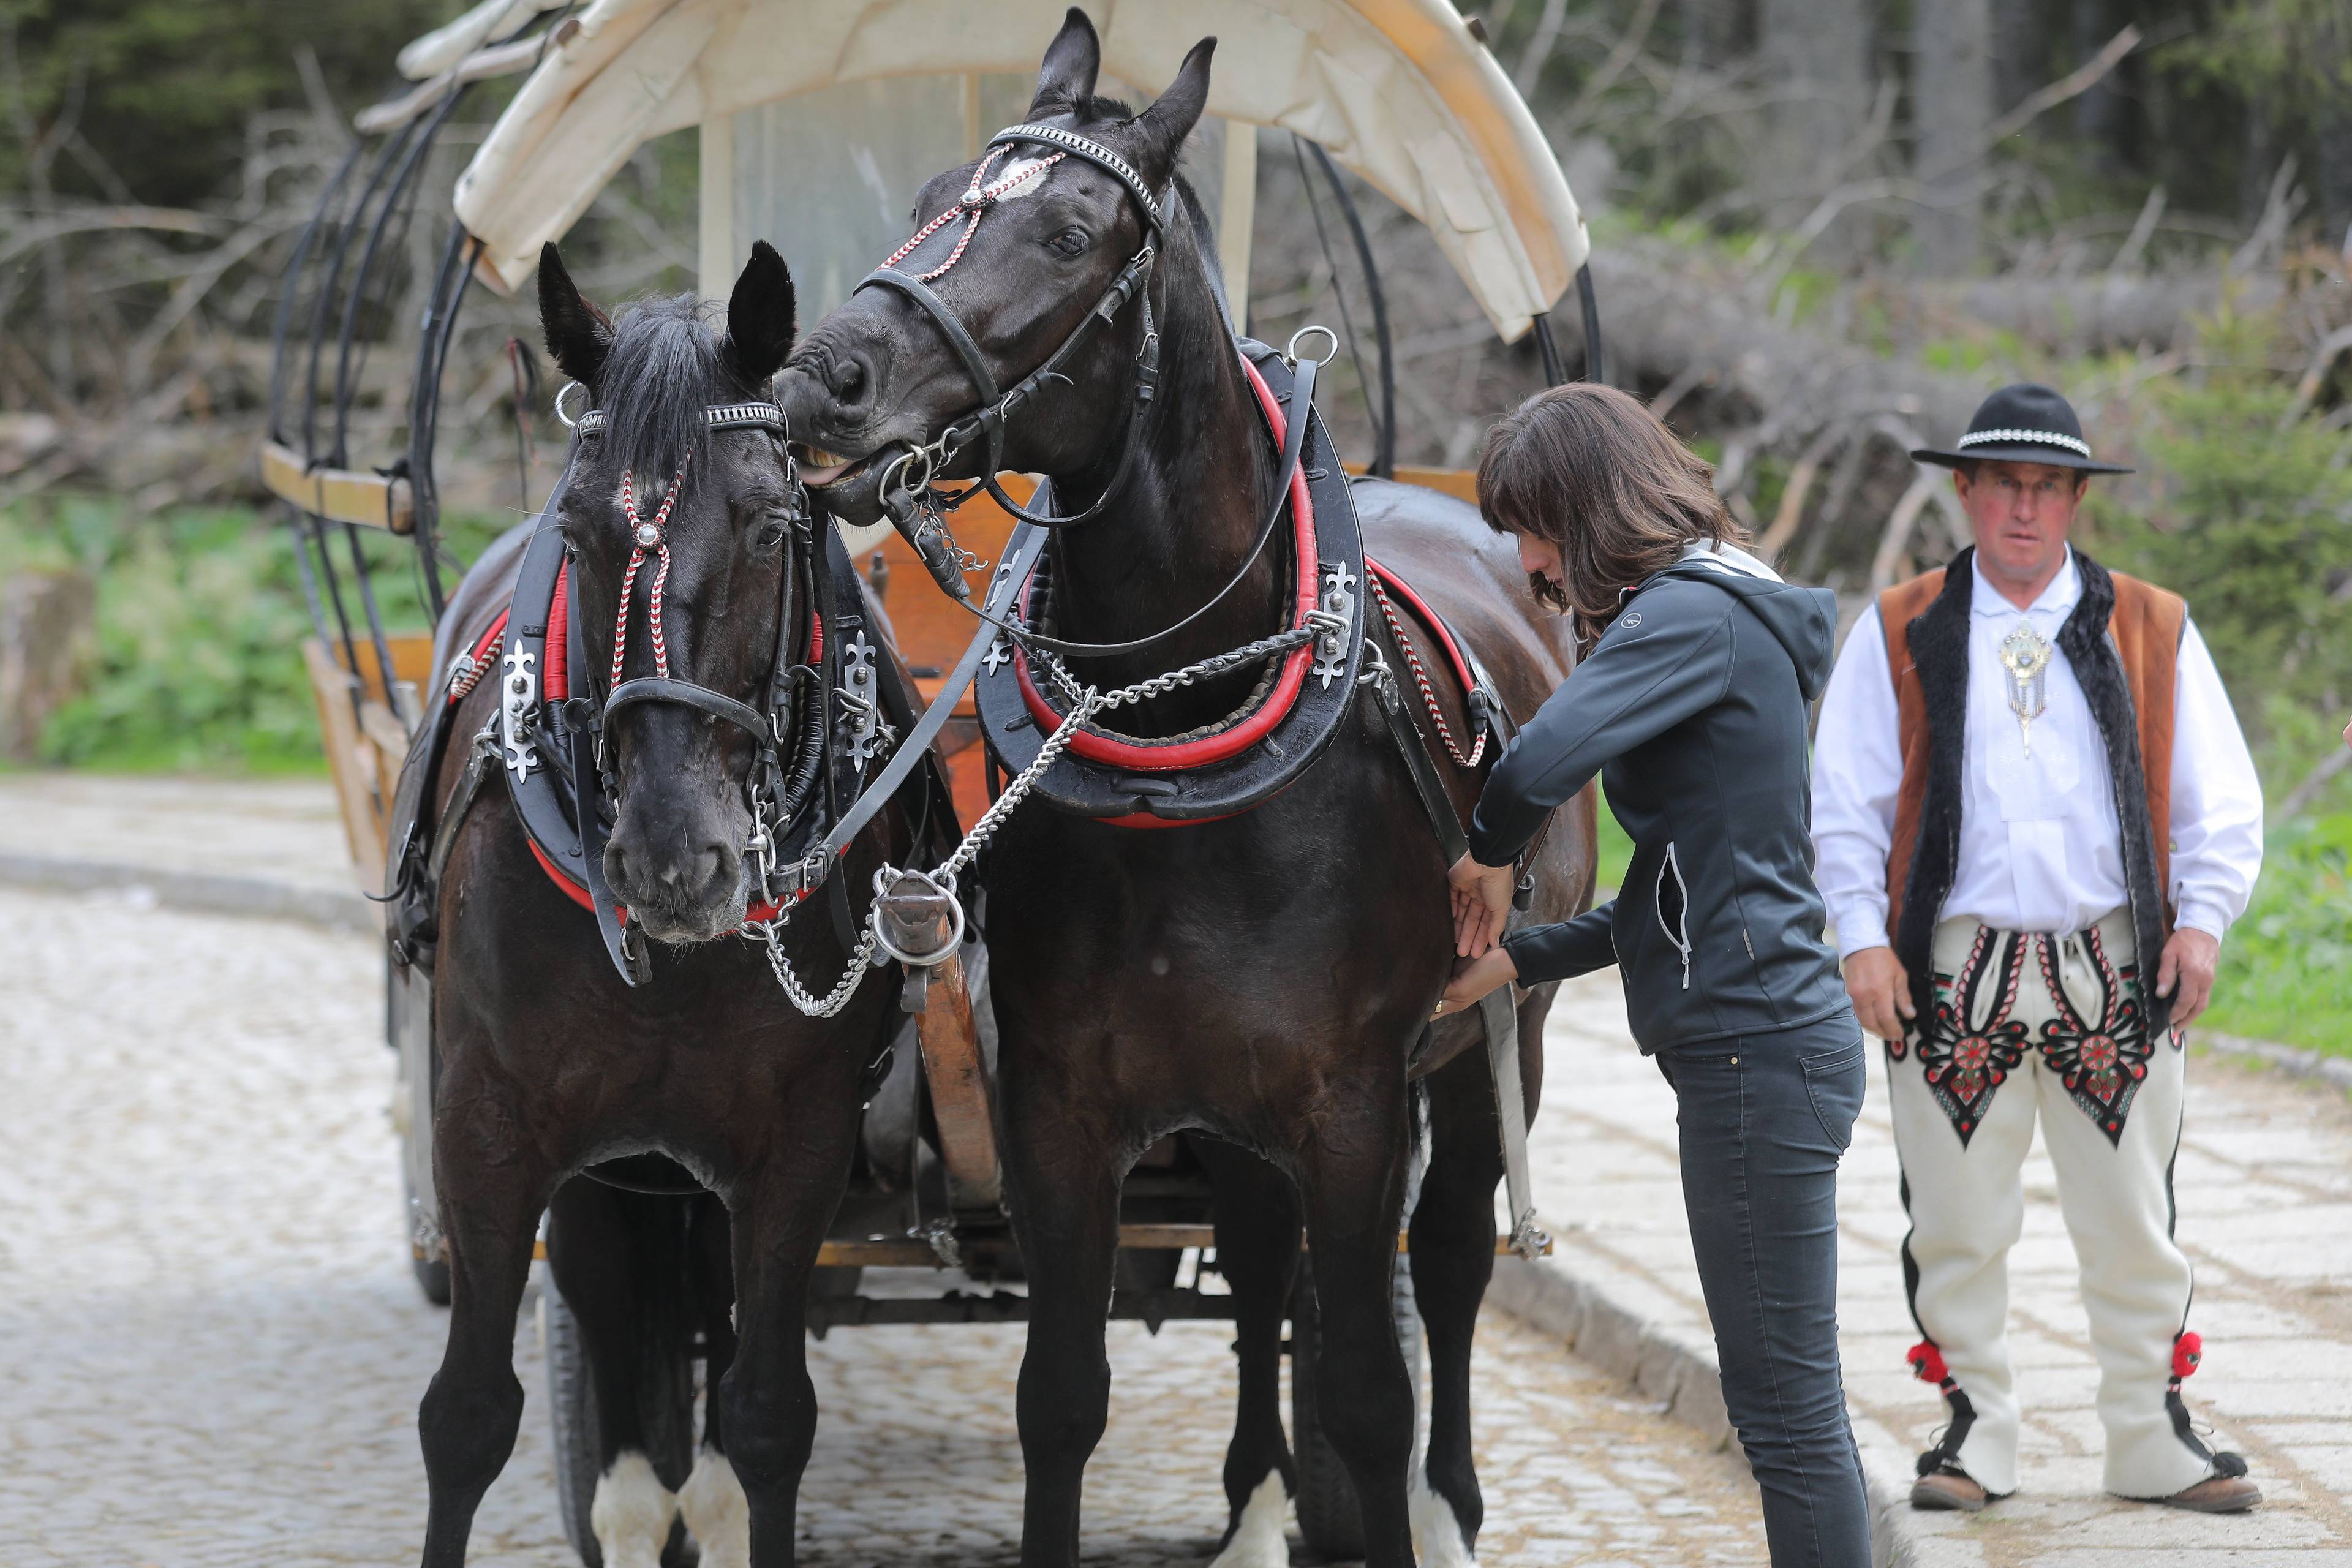 dwa czarne konie ciągną fasiąg, obok stoi mężczyzna w góralskim stroju